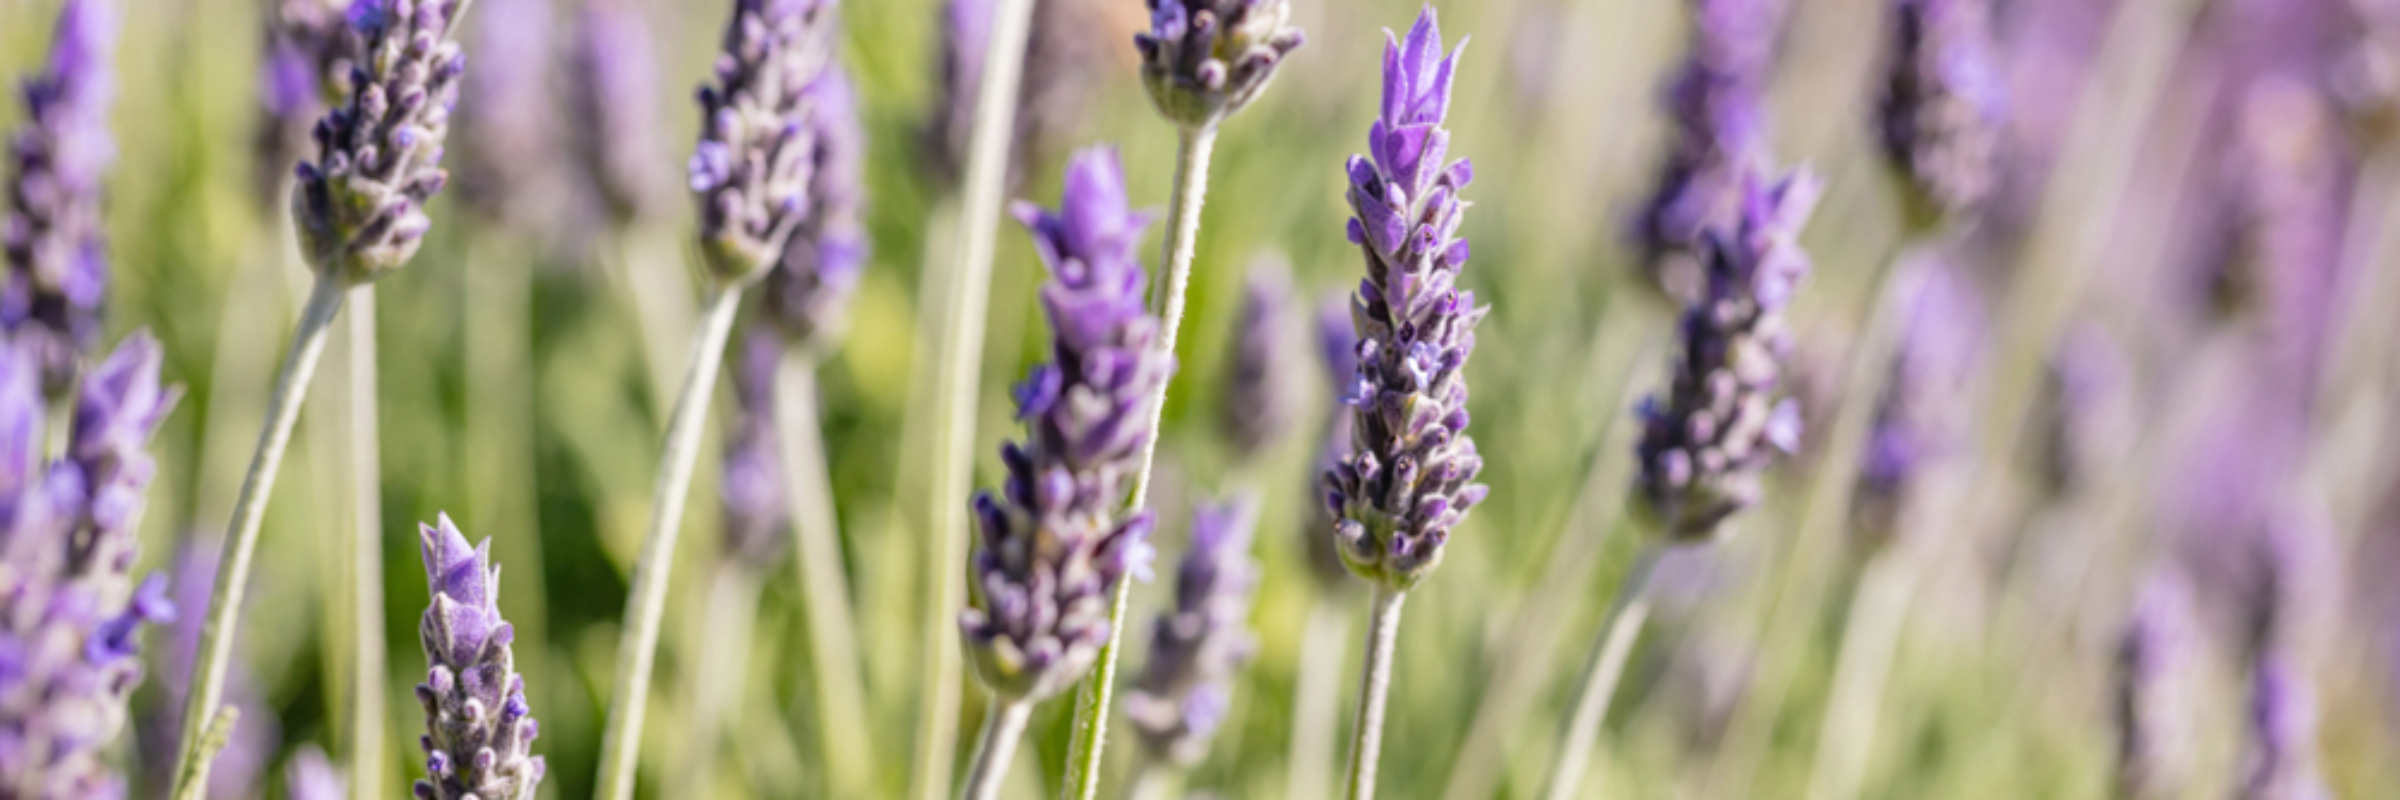 Lavender & Rose Concessions : Wonder, Whimsy, and Garden Refuge